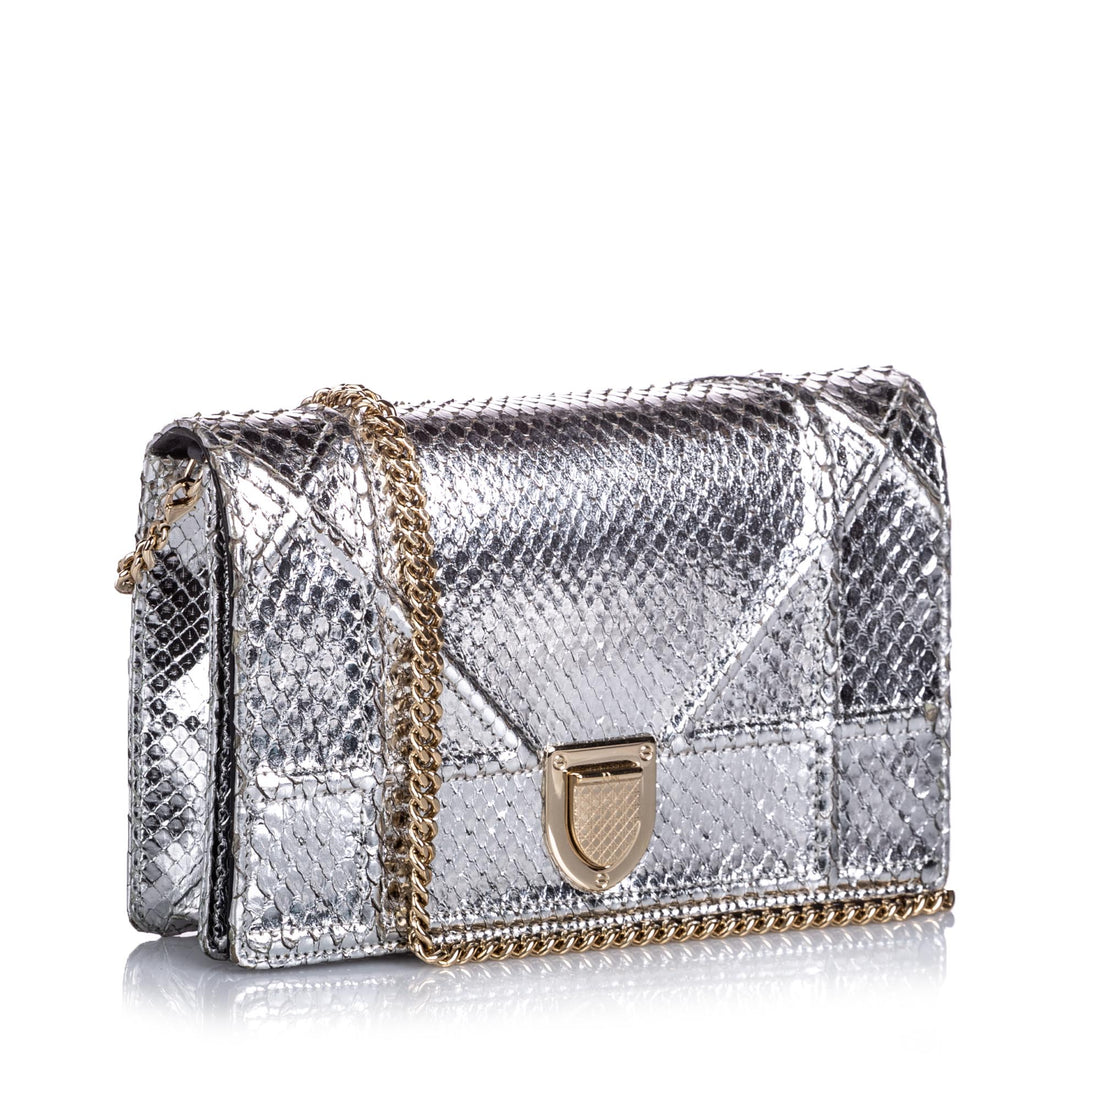 Christian Dior DIORADDICT Tote Calfskin Python Bag  eBay